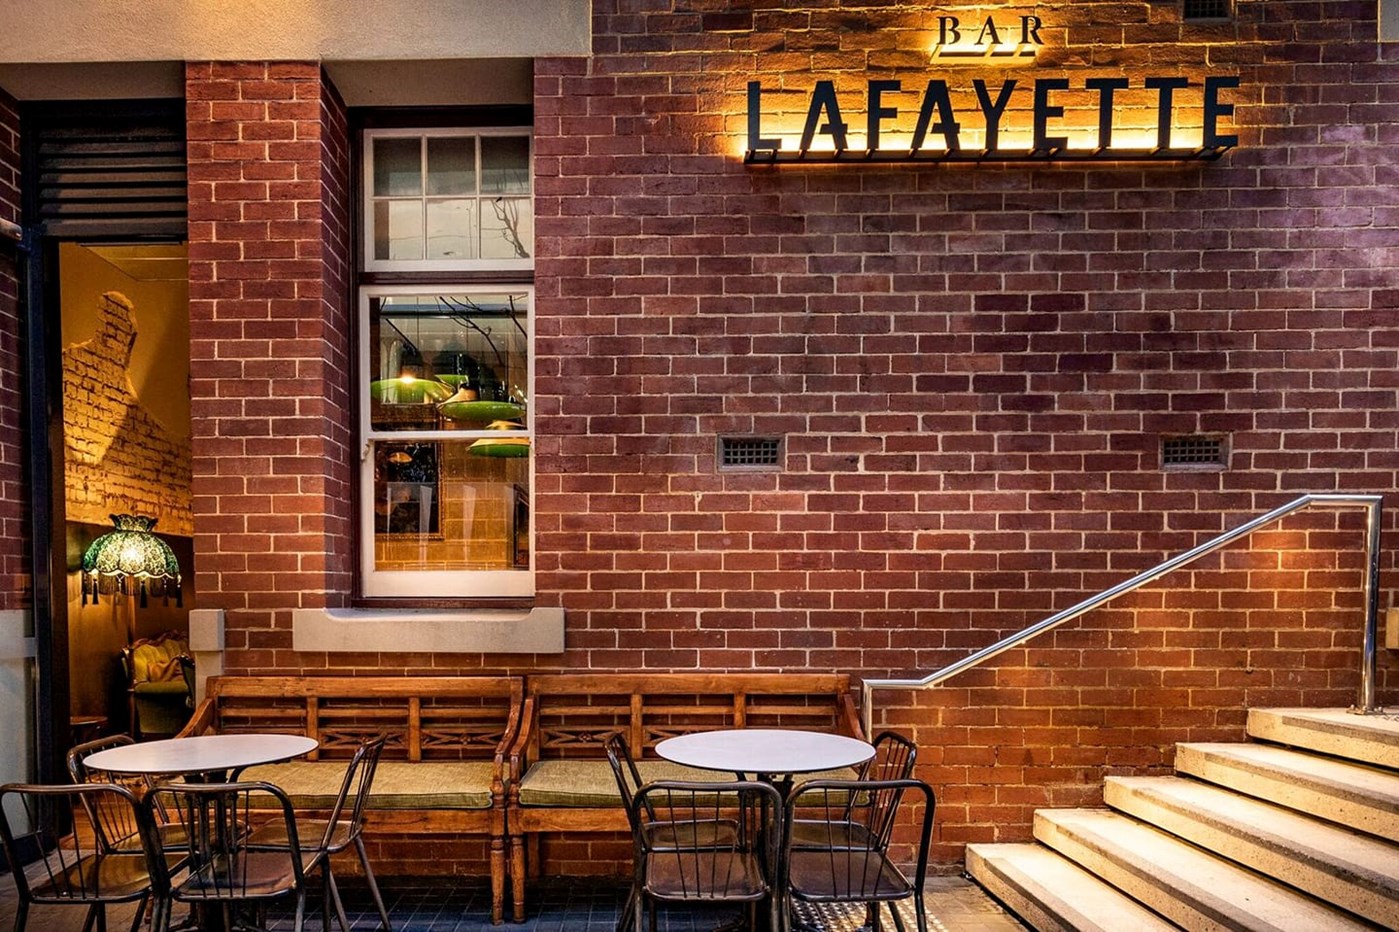 Bar Lafayette